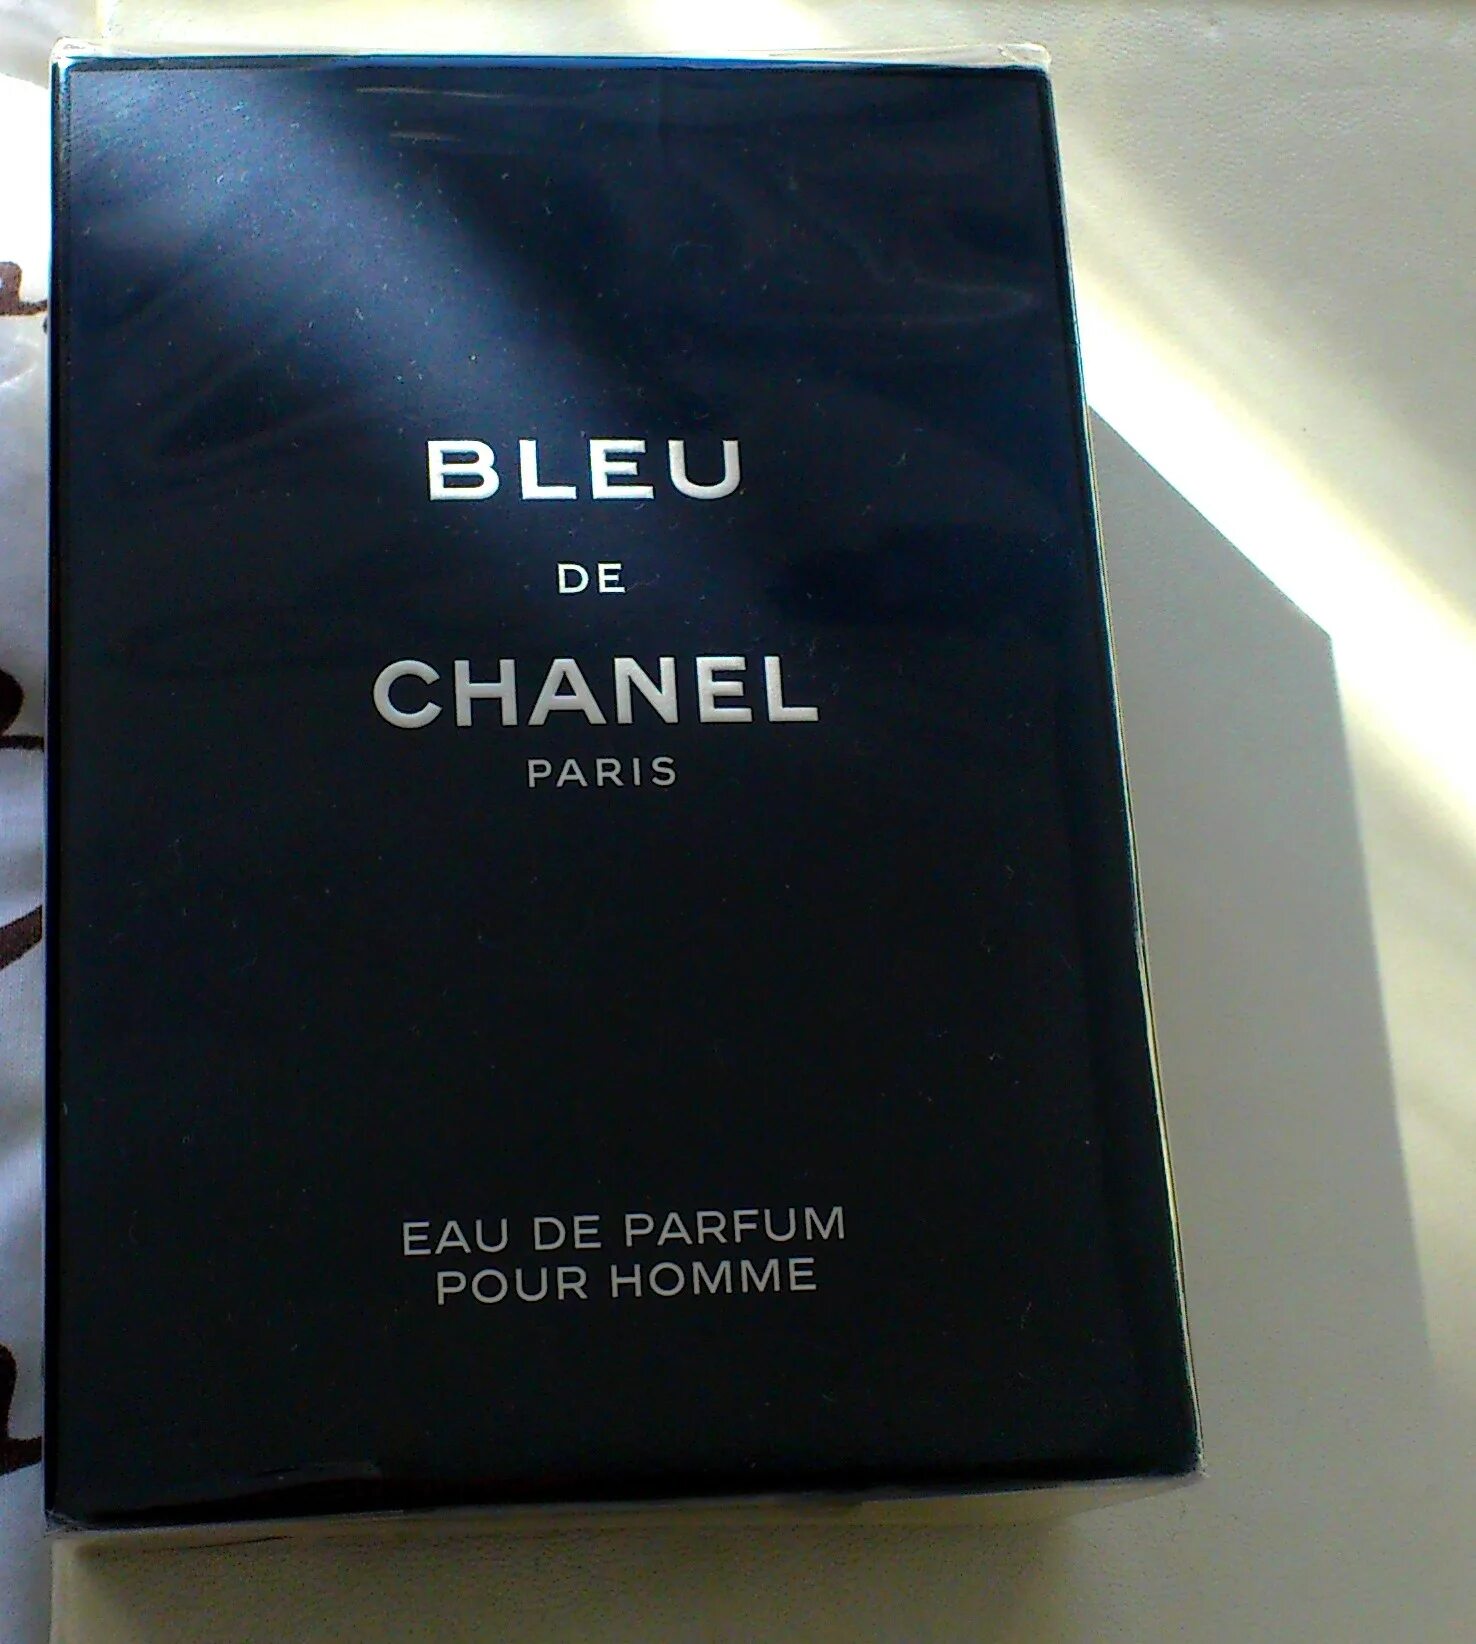 Шанель Блю де Шанель. Chanel bleu EDP M 150ml 205$. Bleu de Chanel реклама. Chanel bleu de Chanel чек о покупке. Блюда шанель мужские